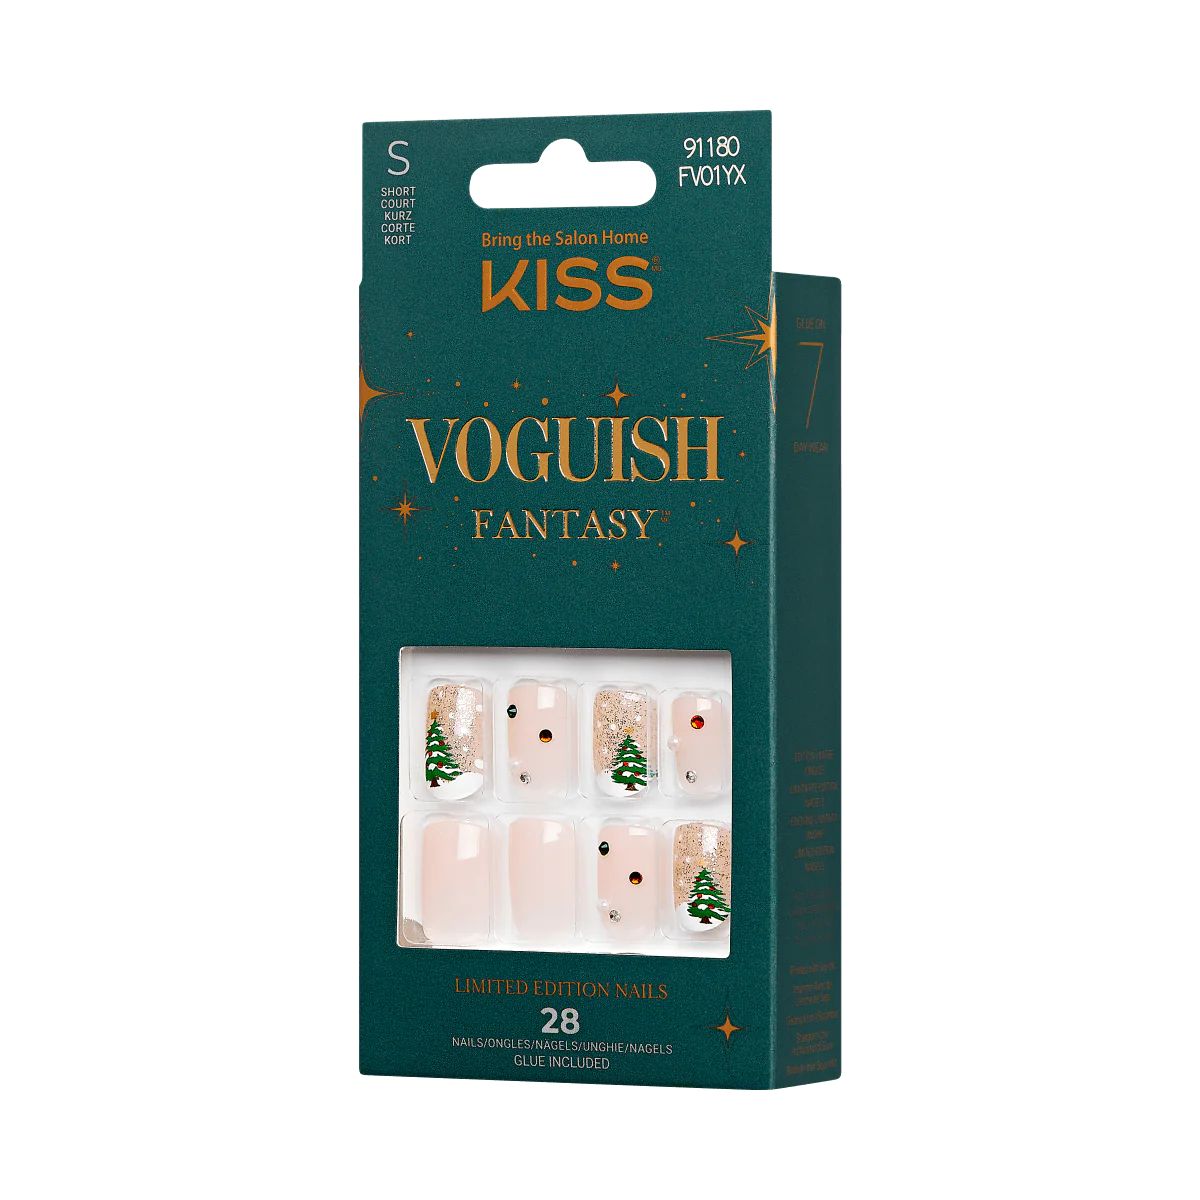 KISS Voguish Fantasy Holiday Press-On Nails, Nude, Short Length, Square Shaped, 31 Ct. | KISS, imPRESS, JOAH